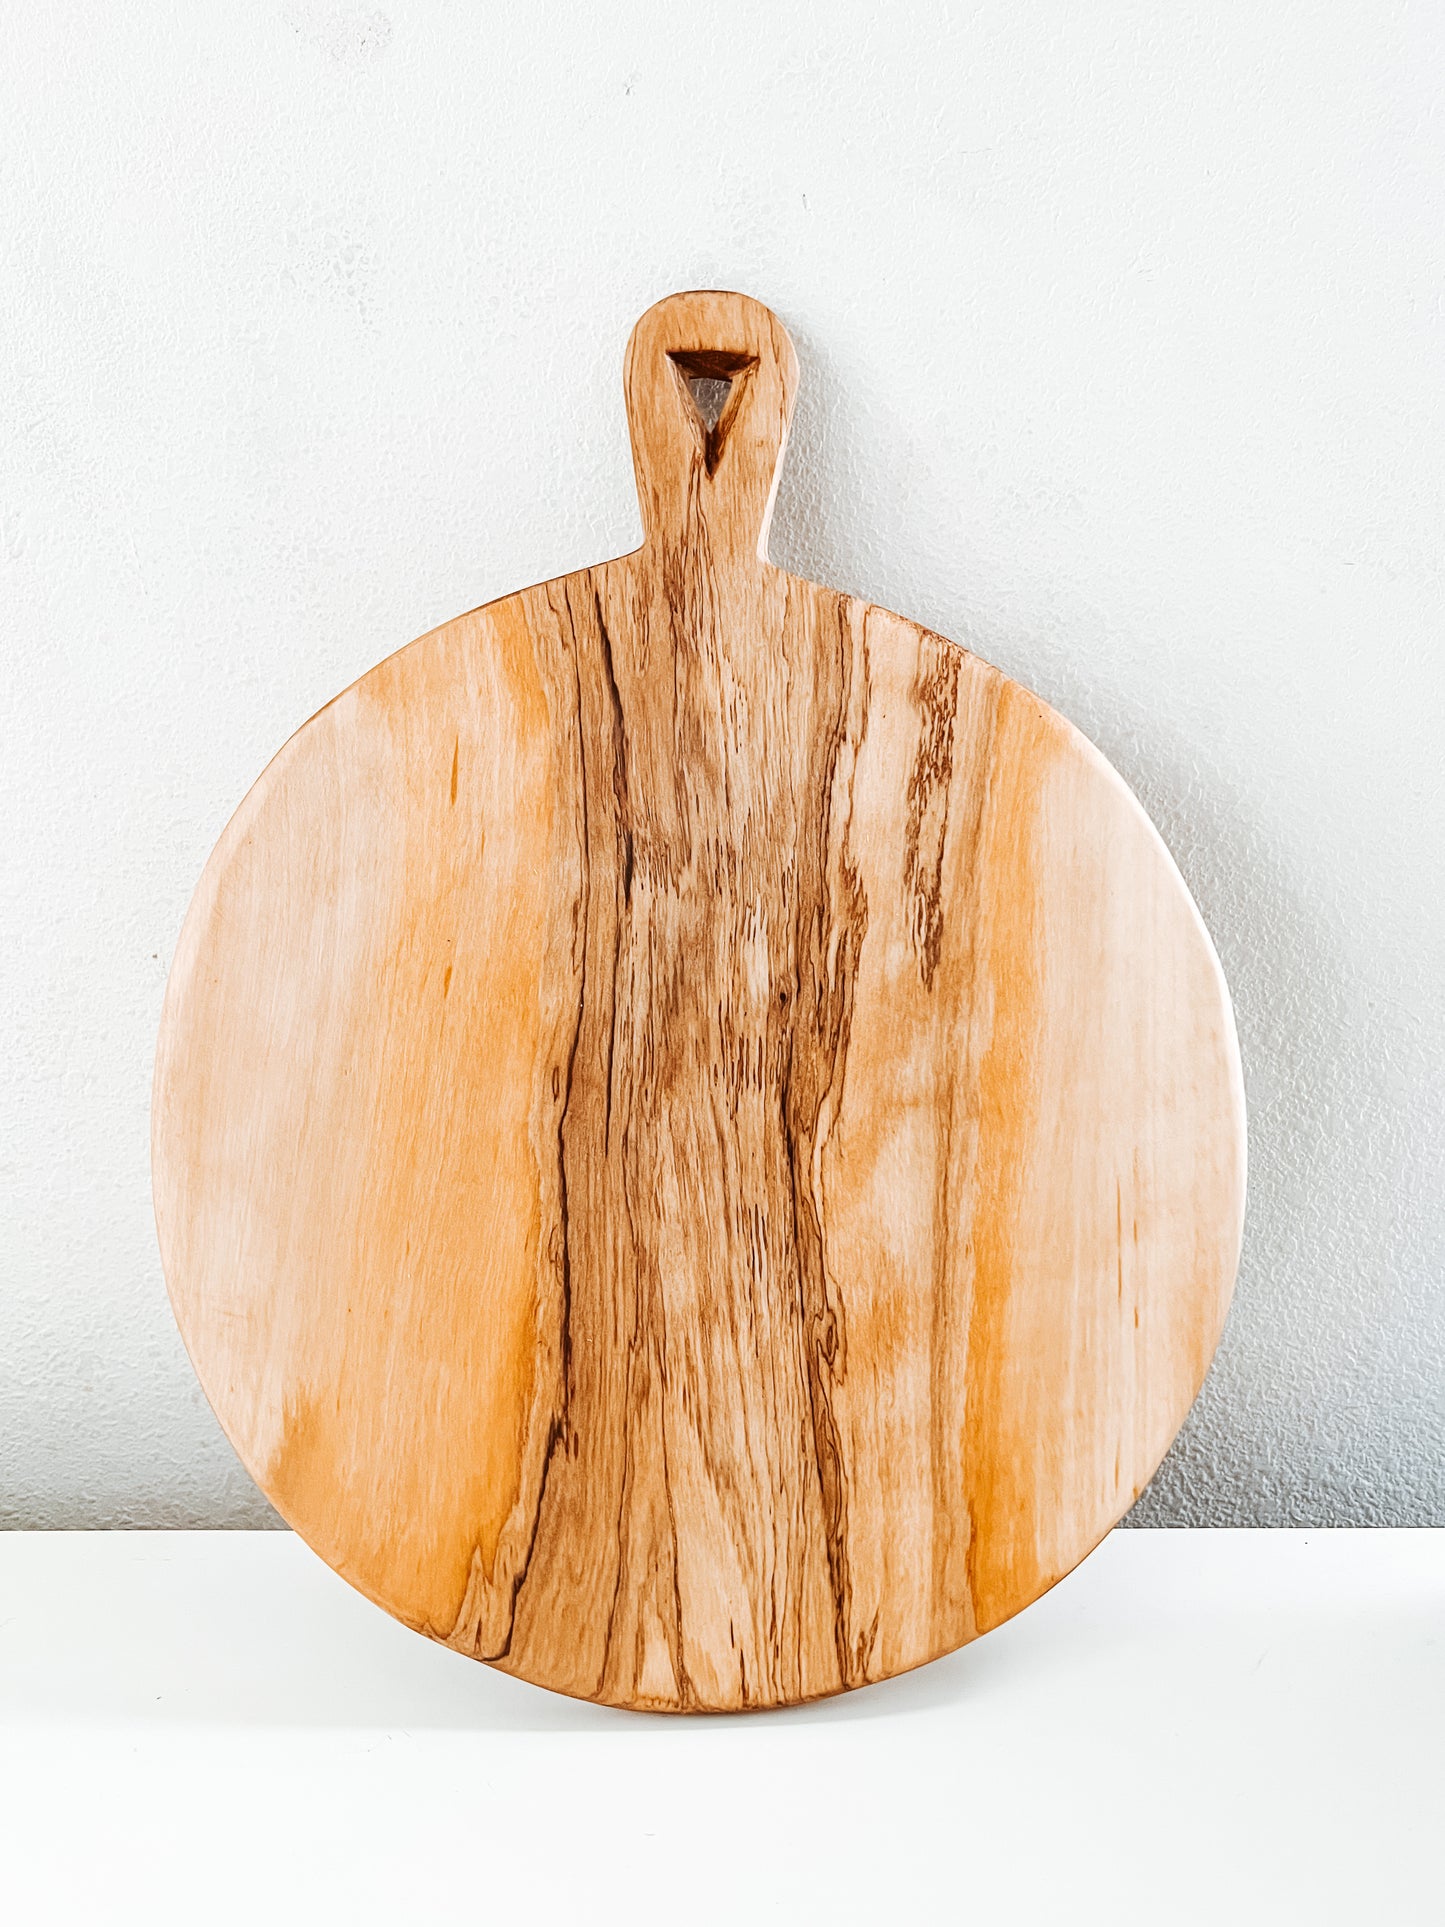 Rhys Olive Wood Cutting Board